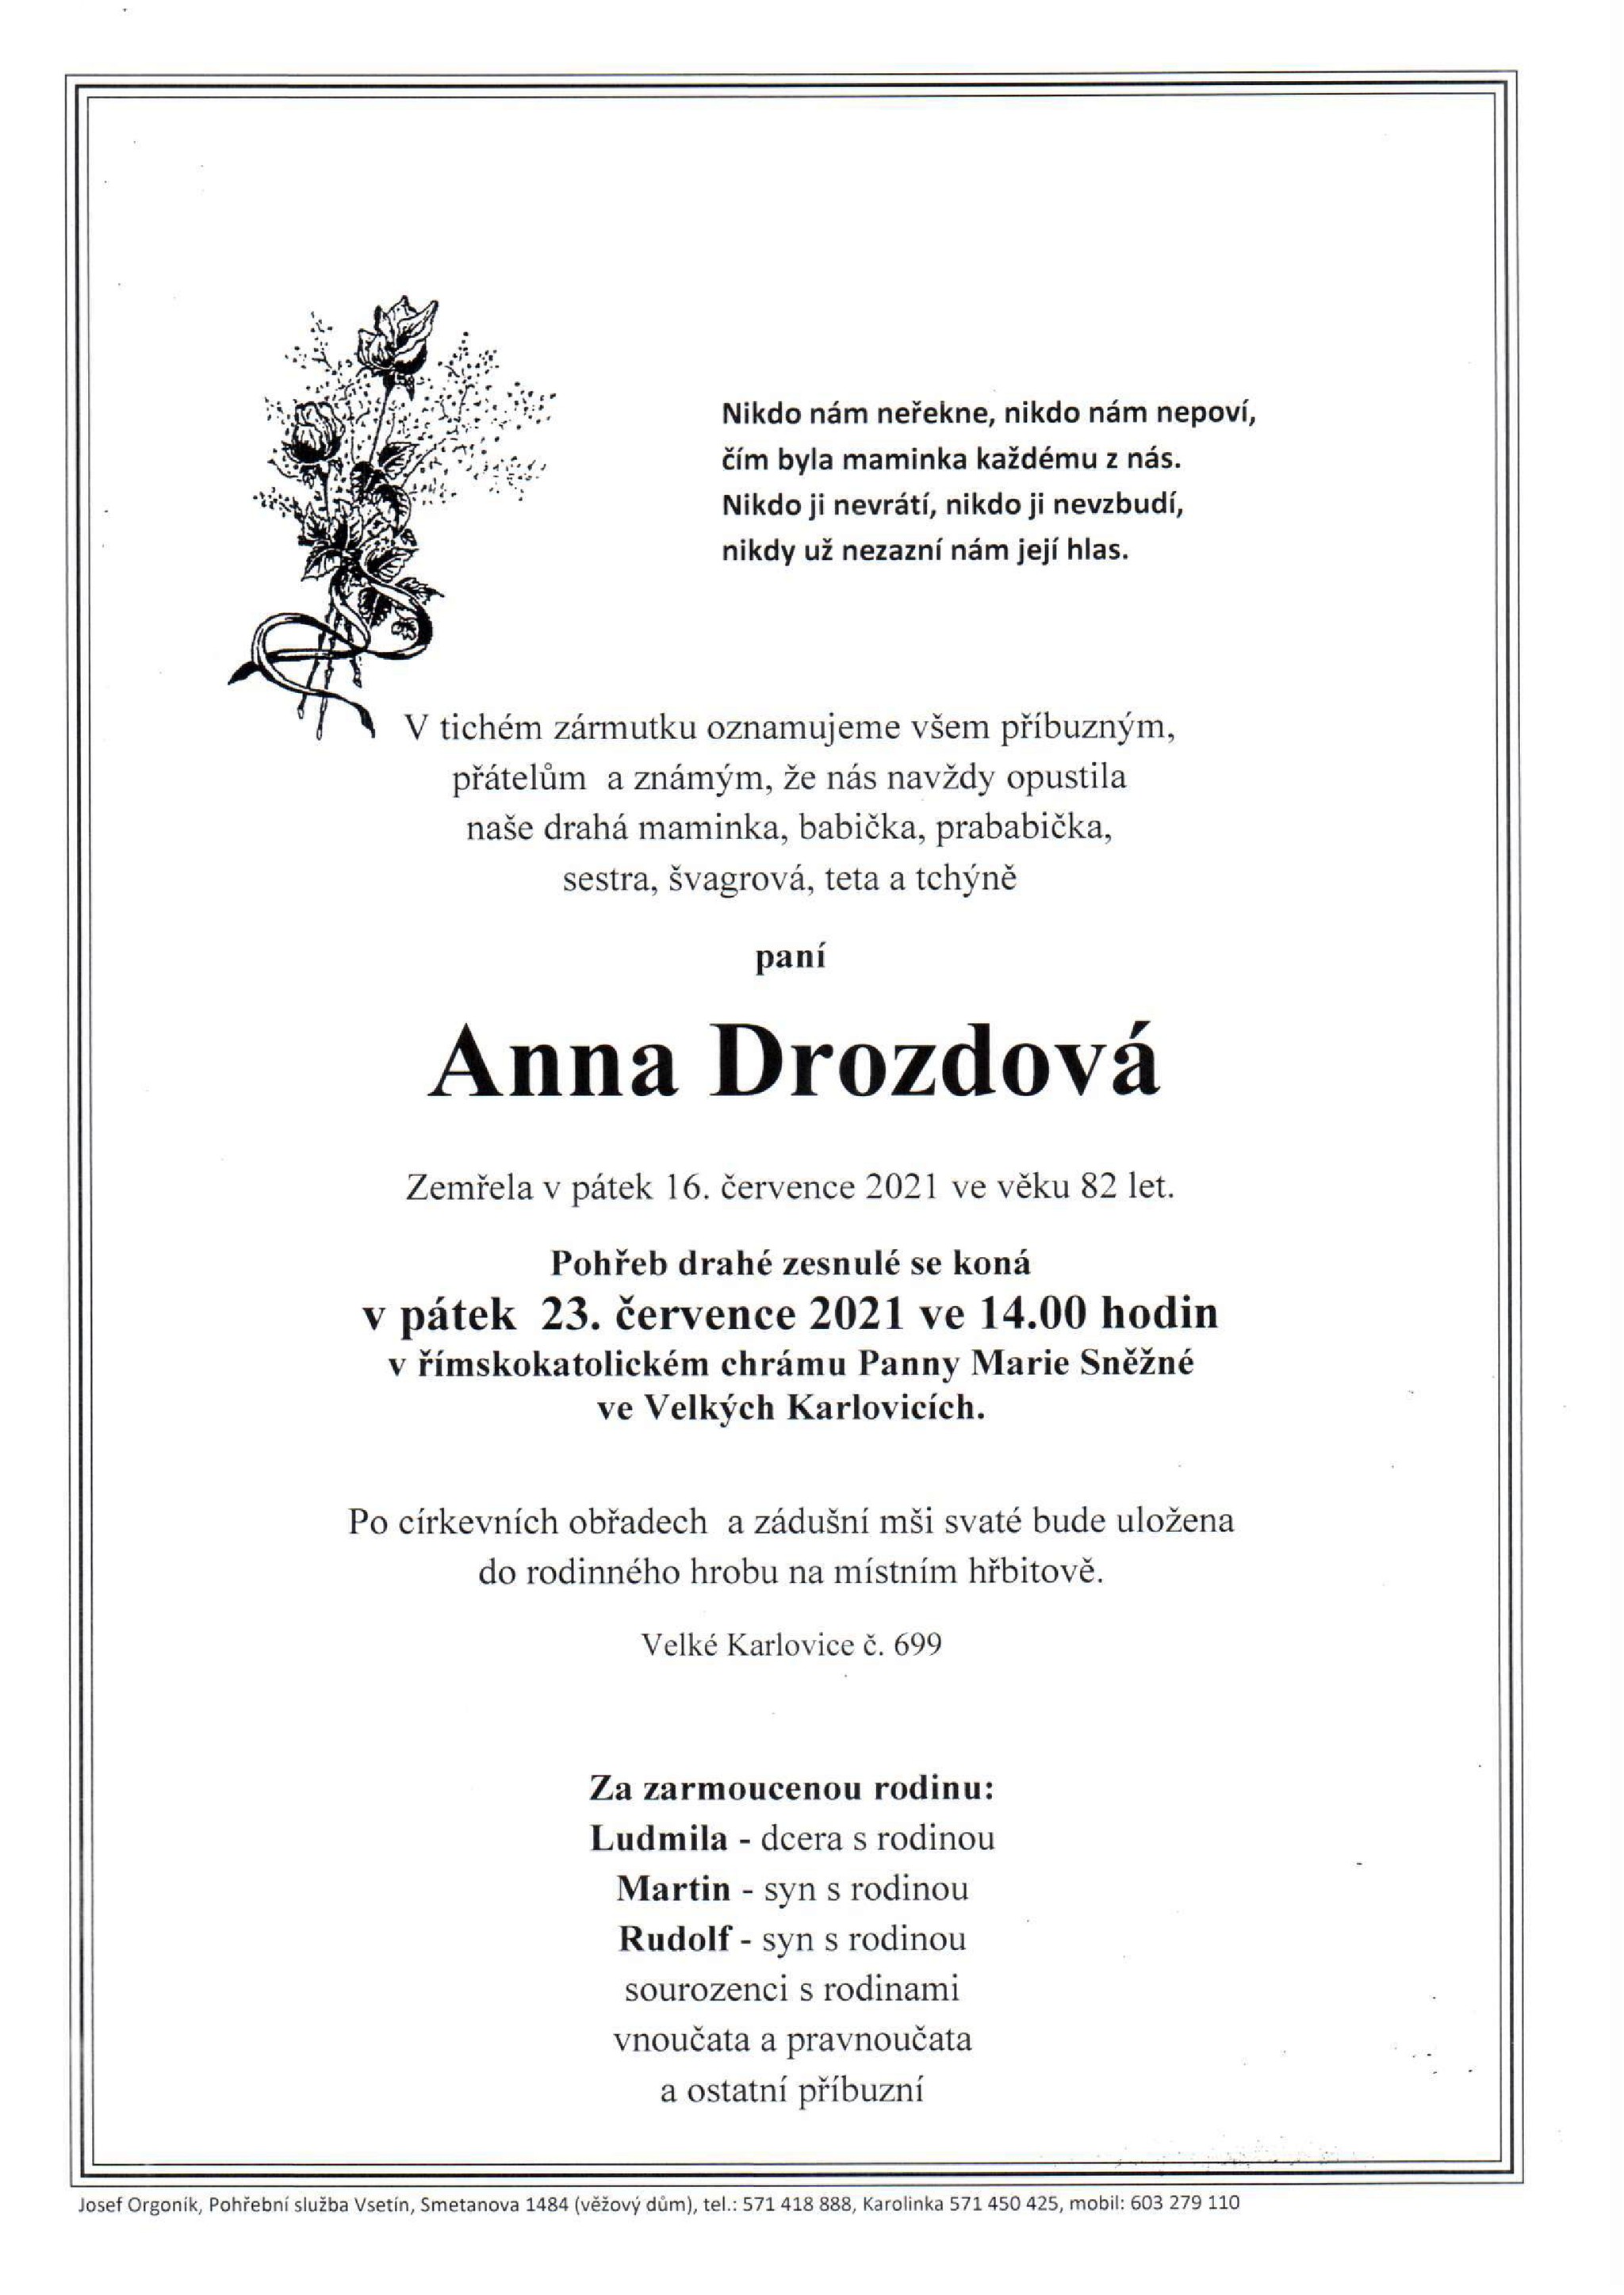 Anna Drozdová